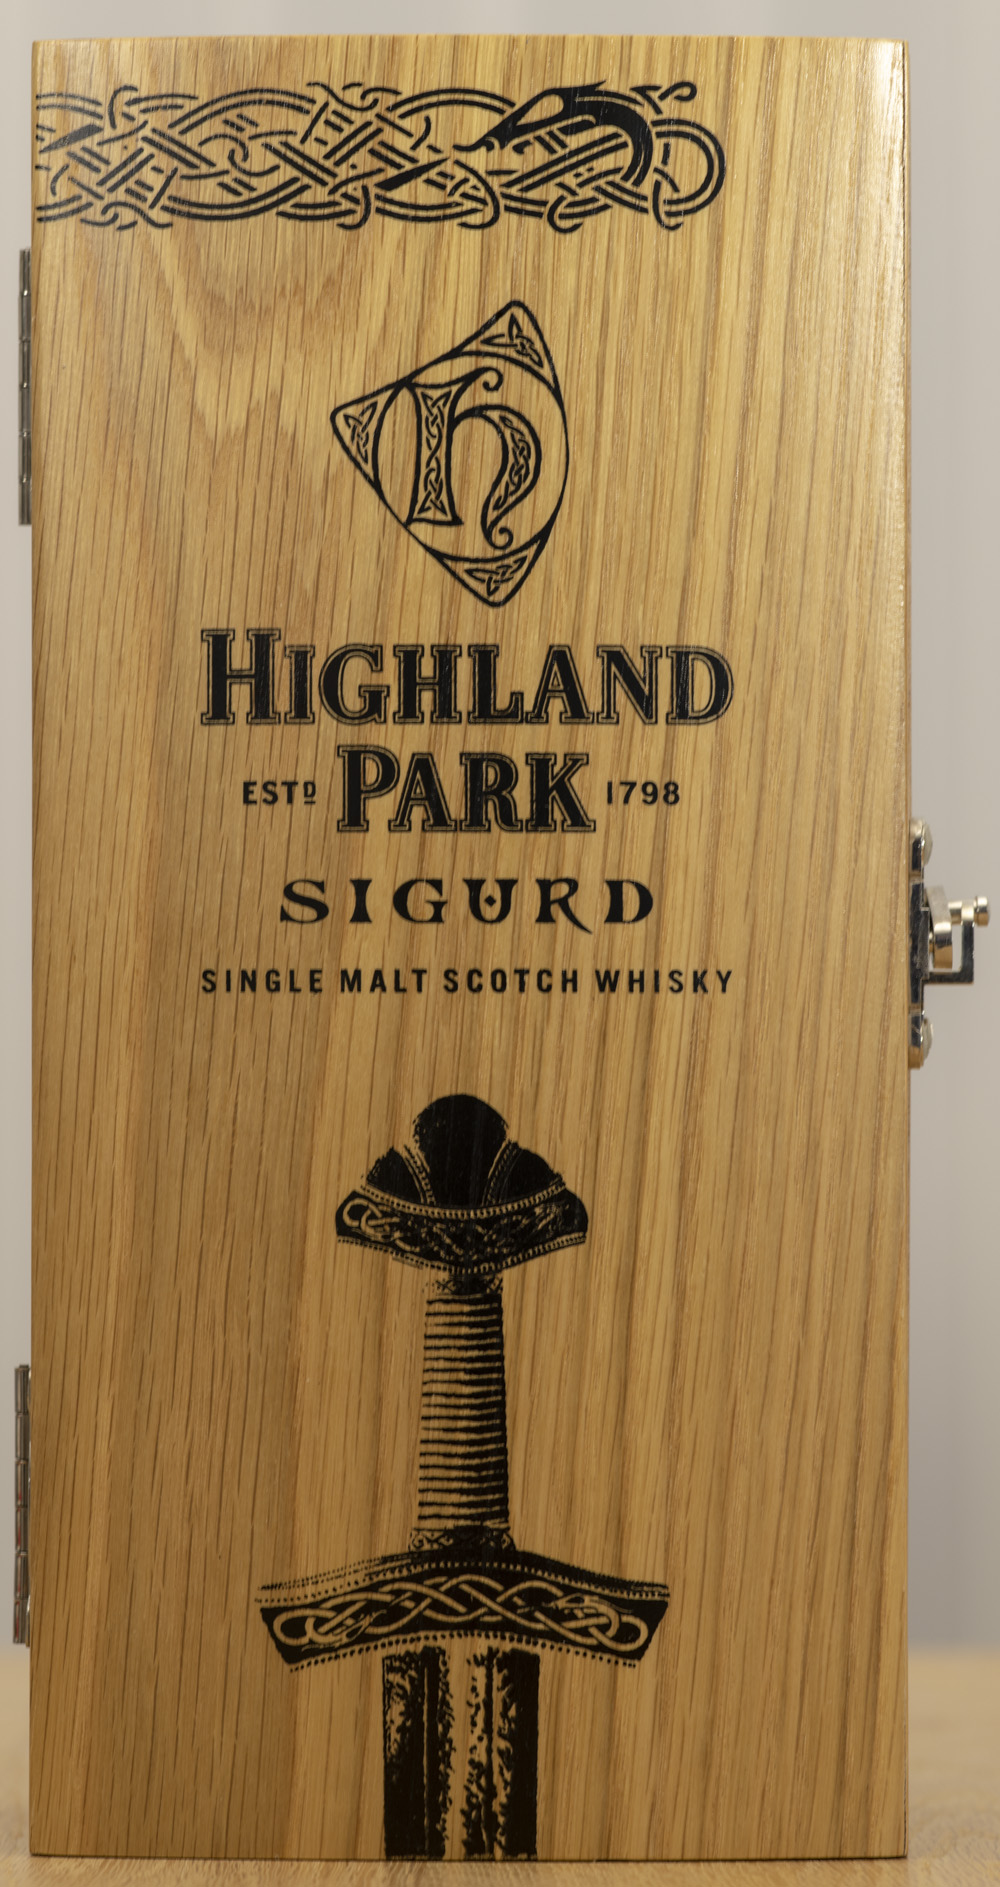 Billede: PHC_1557 - Highland Park Sigurd - box front.jpg